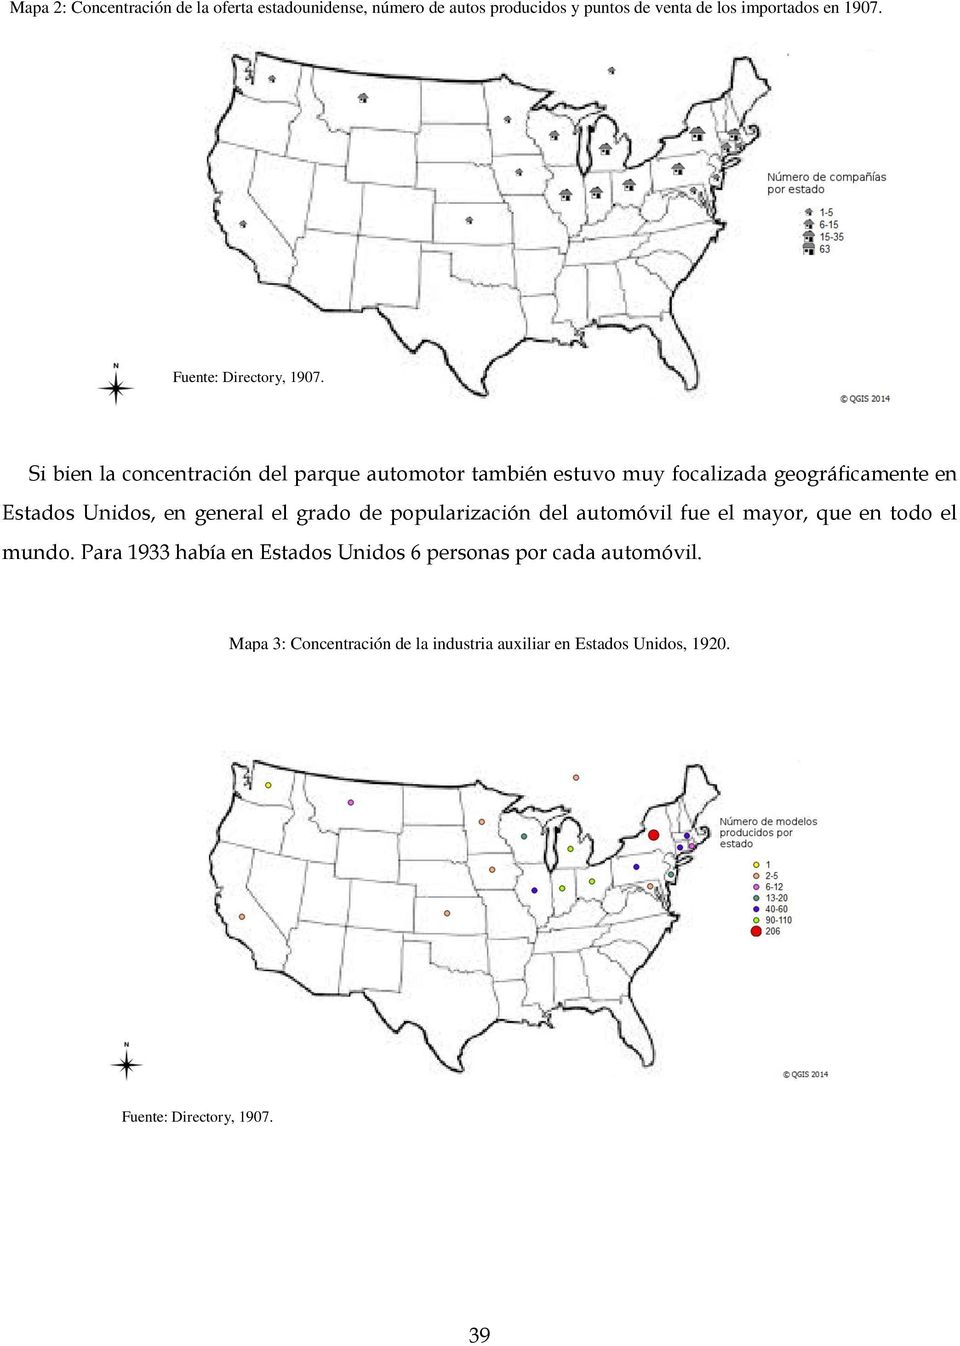 Si bien la concentración del parque automotor también estuvo muy focalizada geográficamente en Estados Unidos, en general el grado de